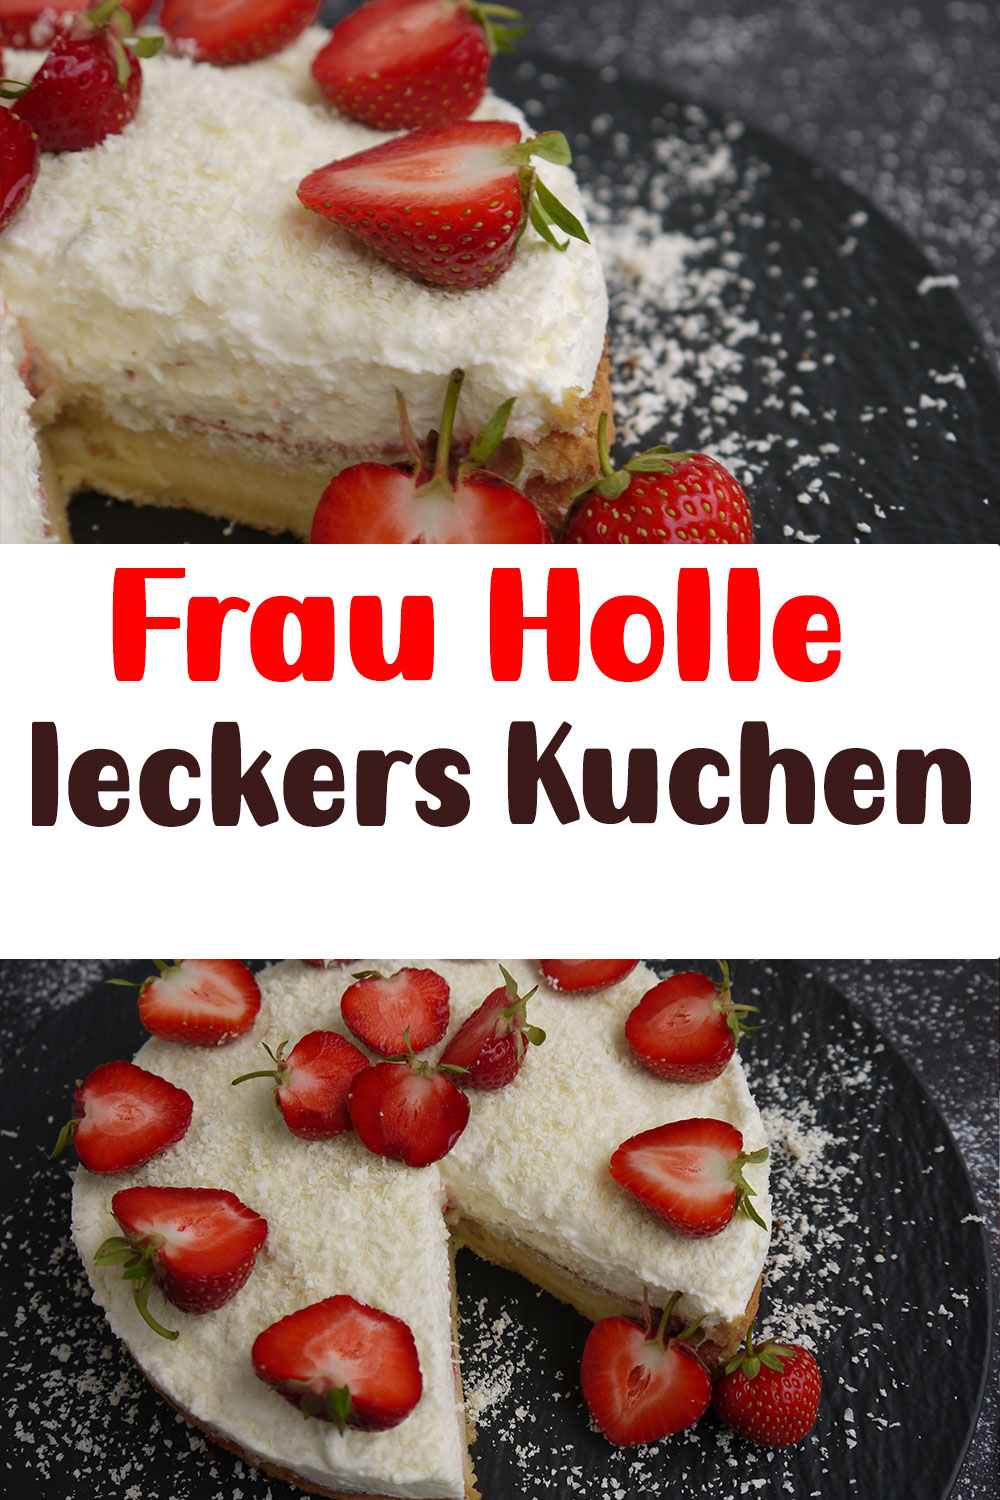 Frau Holle leckers Kuchen